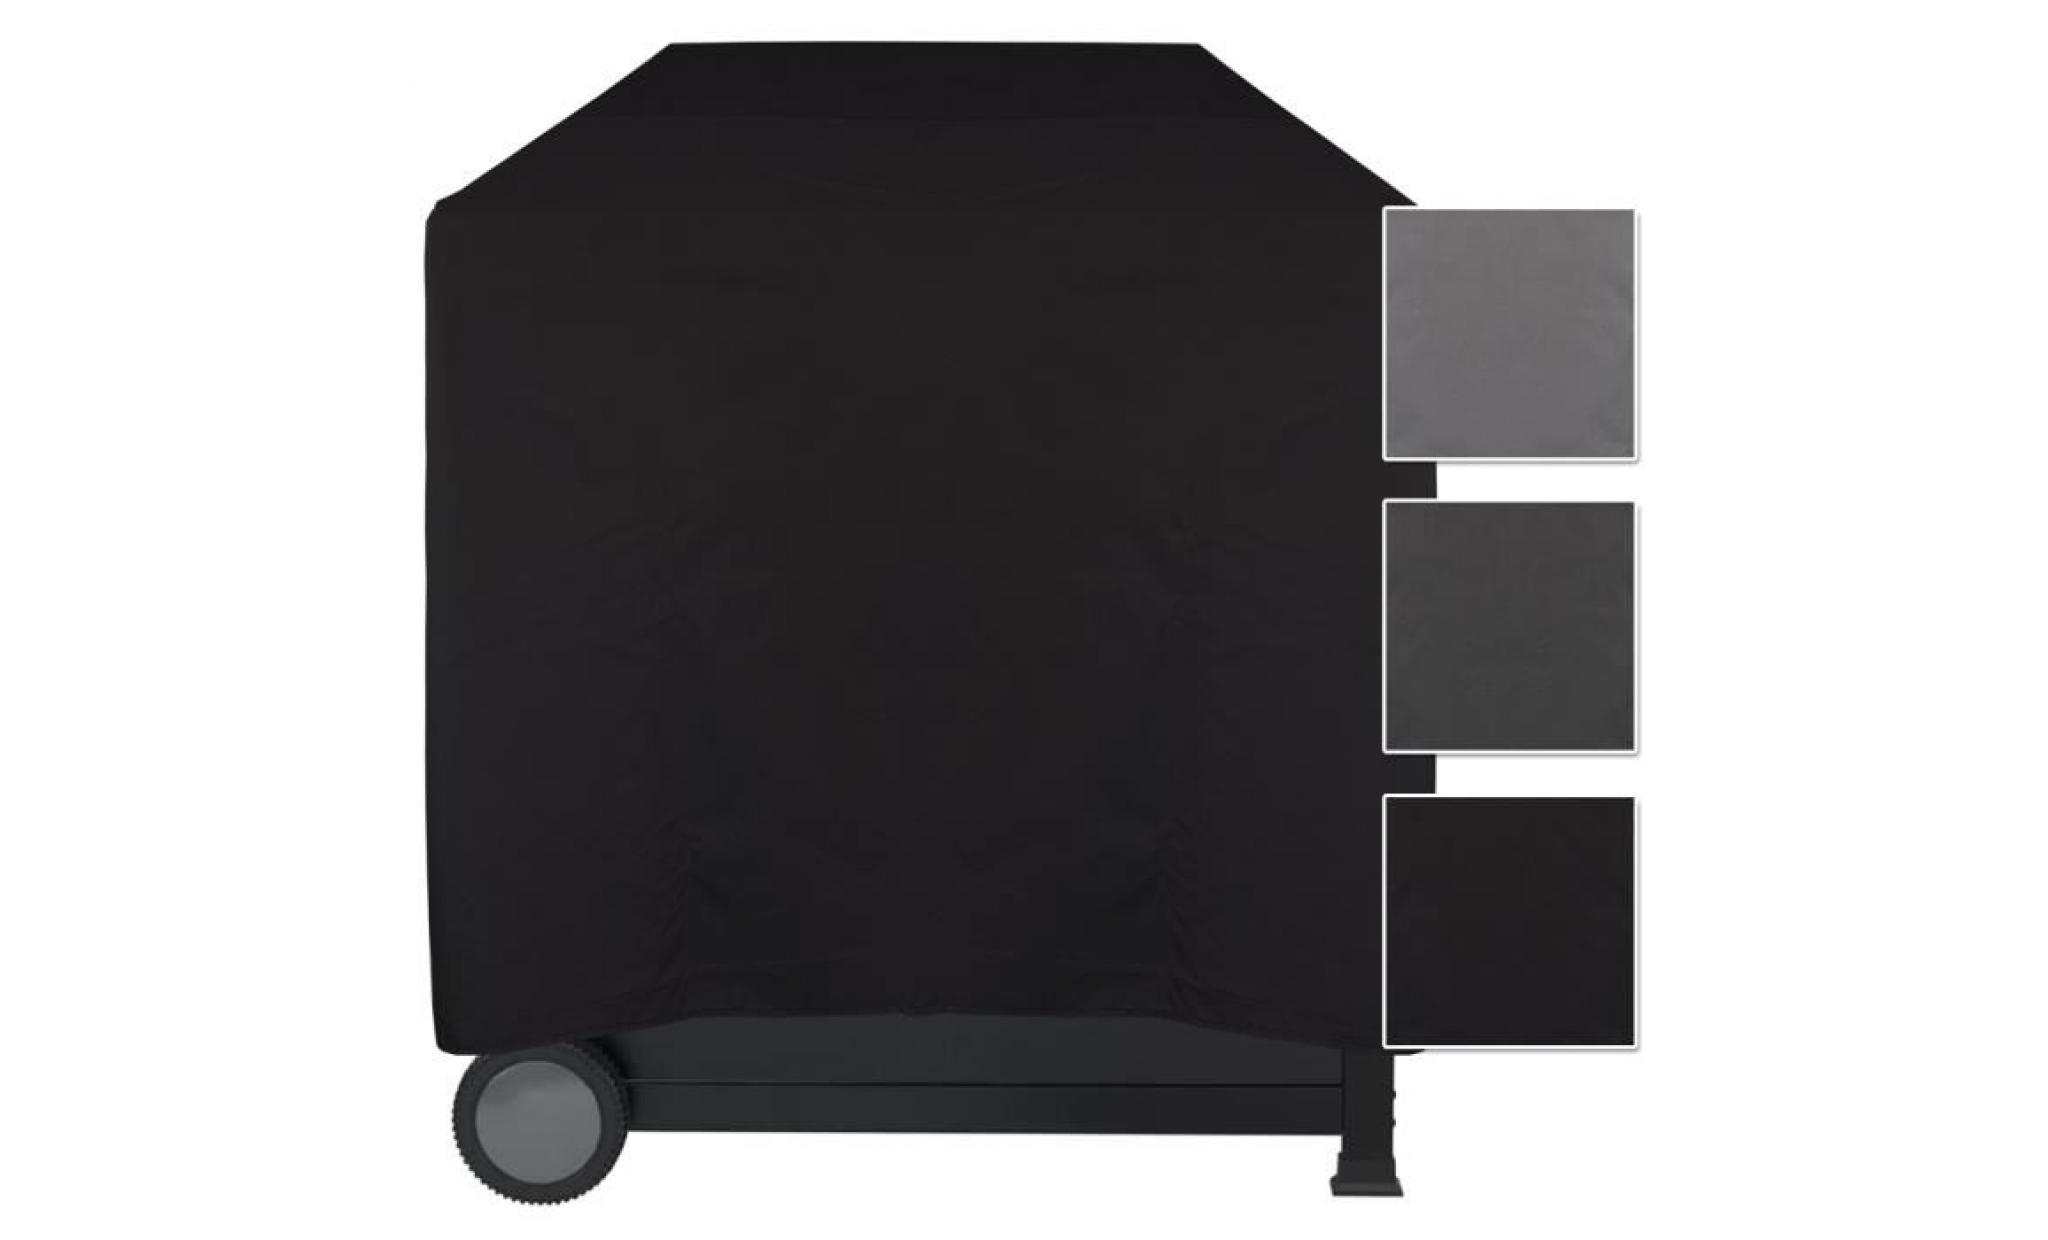 housse pour barbecue imperméable lounge noir, s 52 x 52 x 52 cm   protège contre la pluie, la saleté et les rayons du soleil pas cher